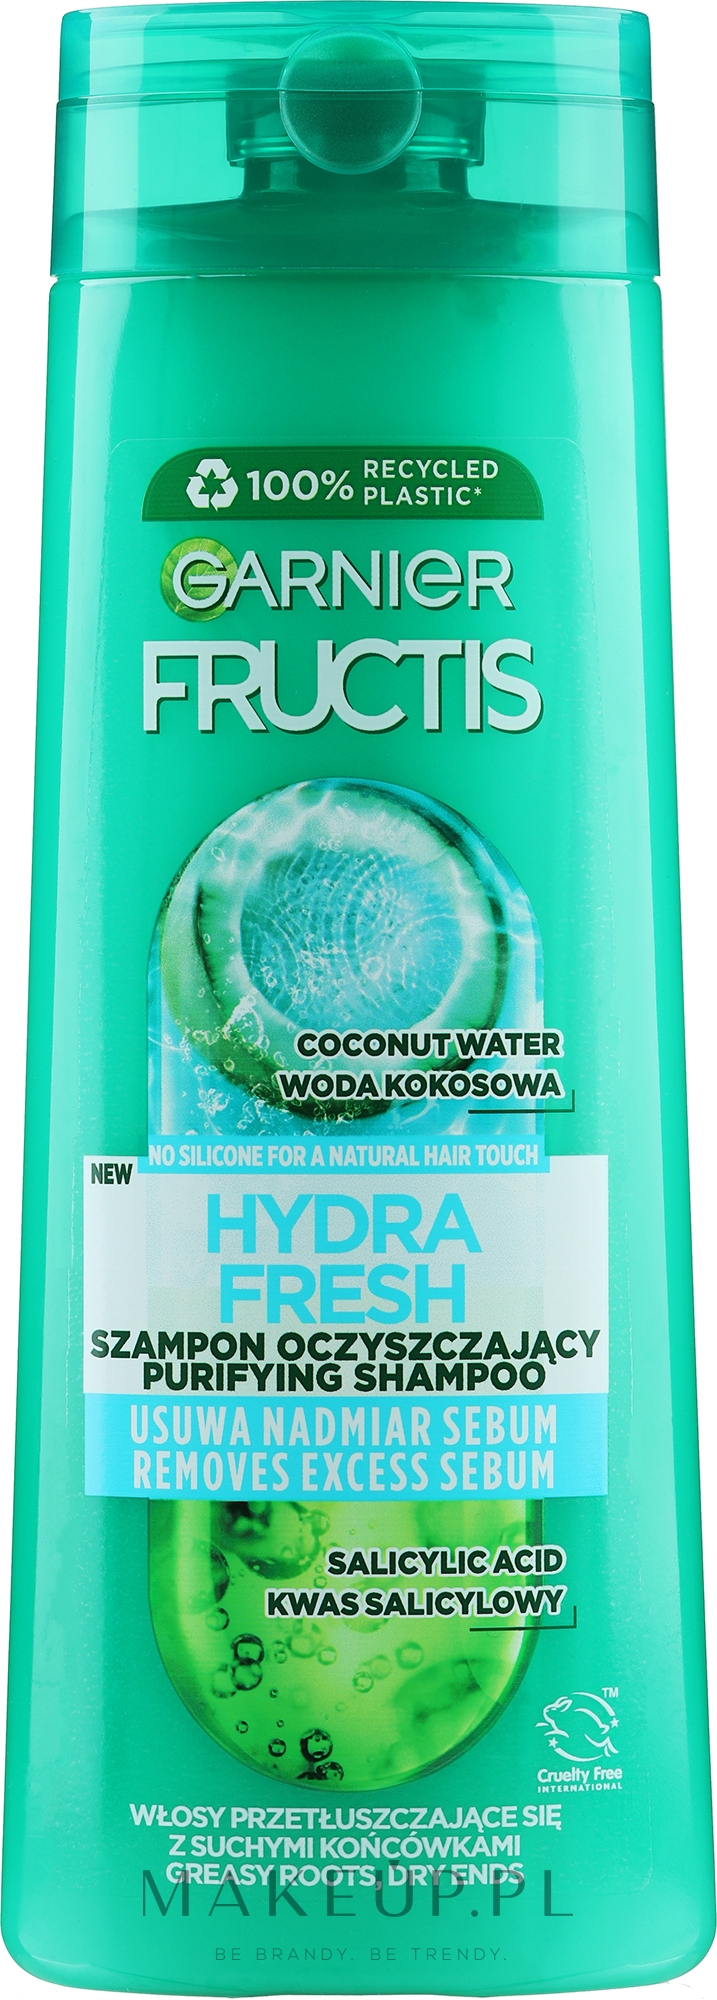 fructis hydra fresh szampon wzmacniający